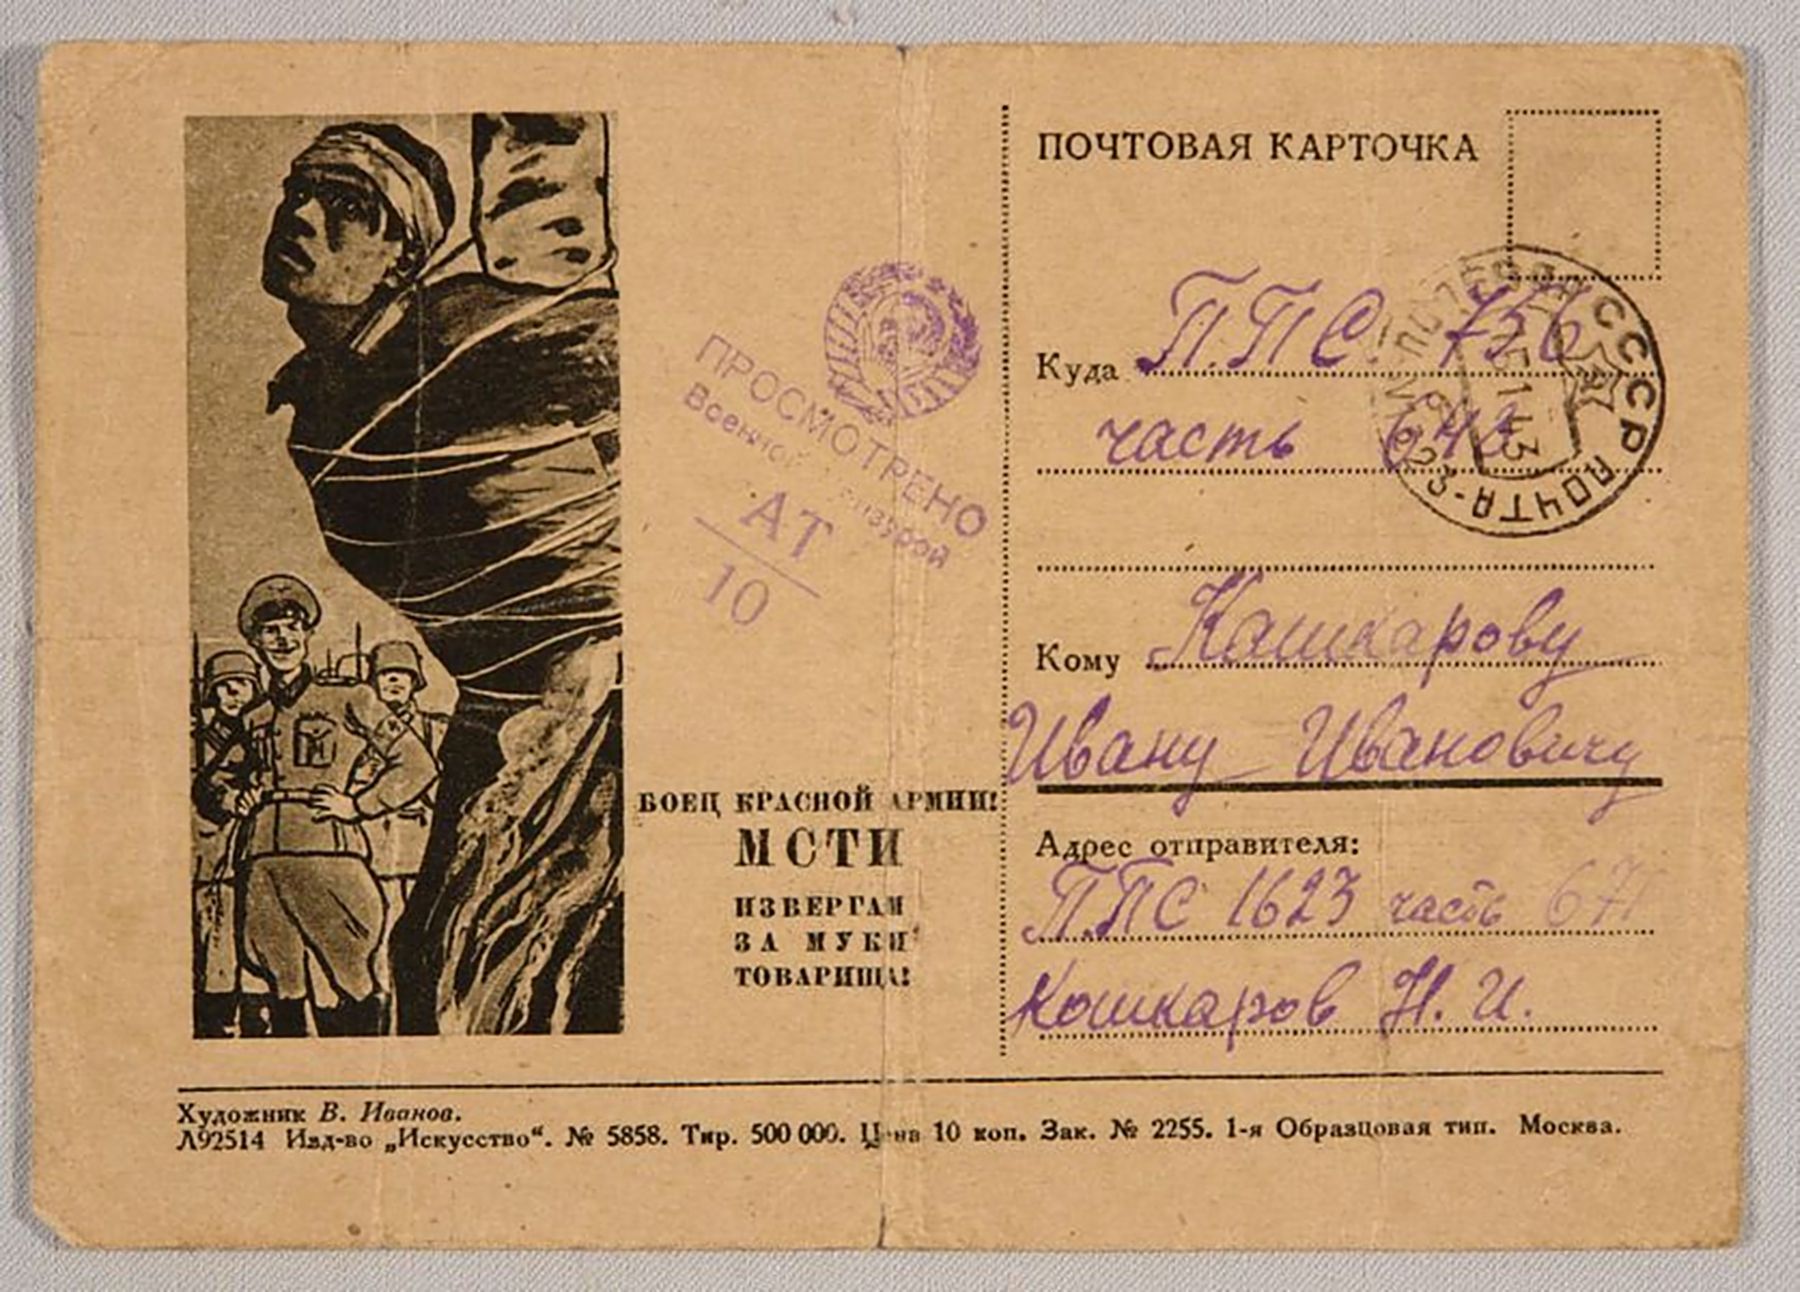 Карточка почтовая Кошкарова Николая погибшего в 1943 г